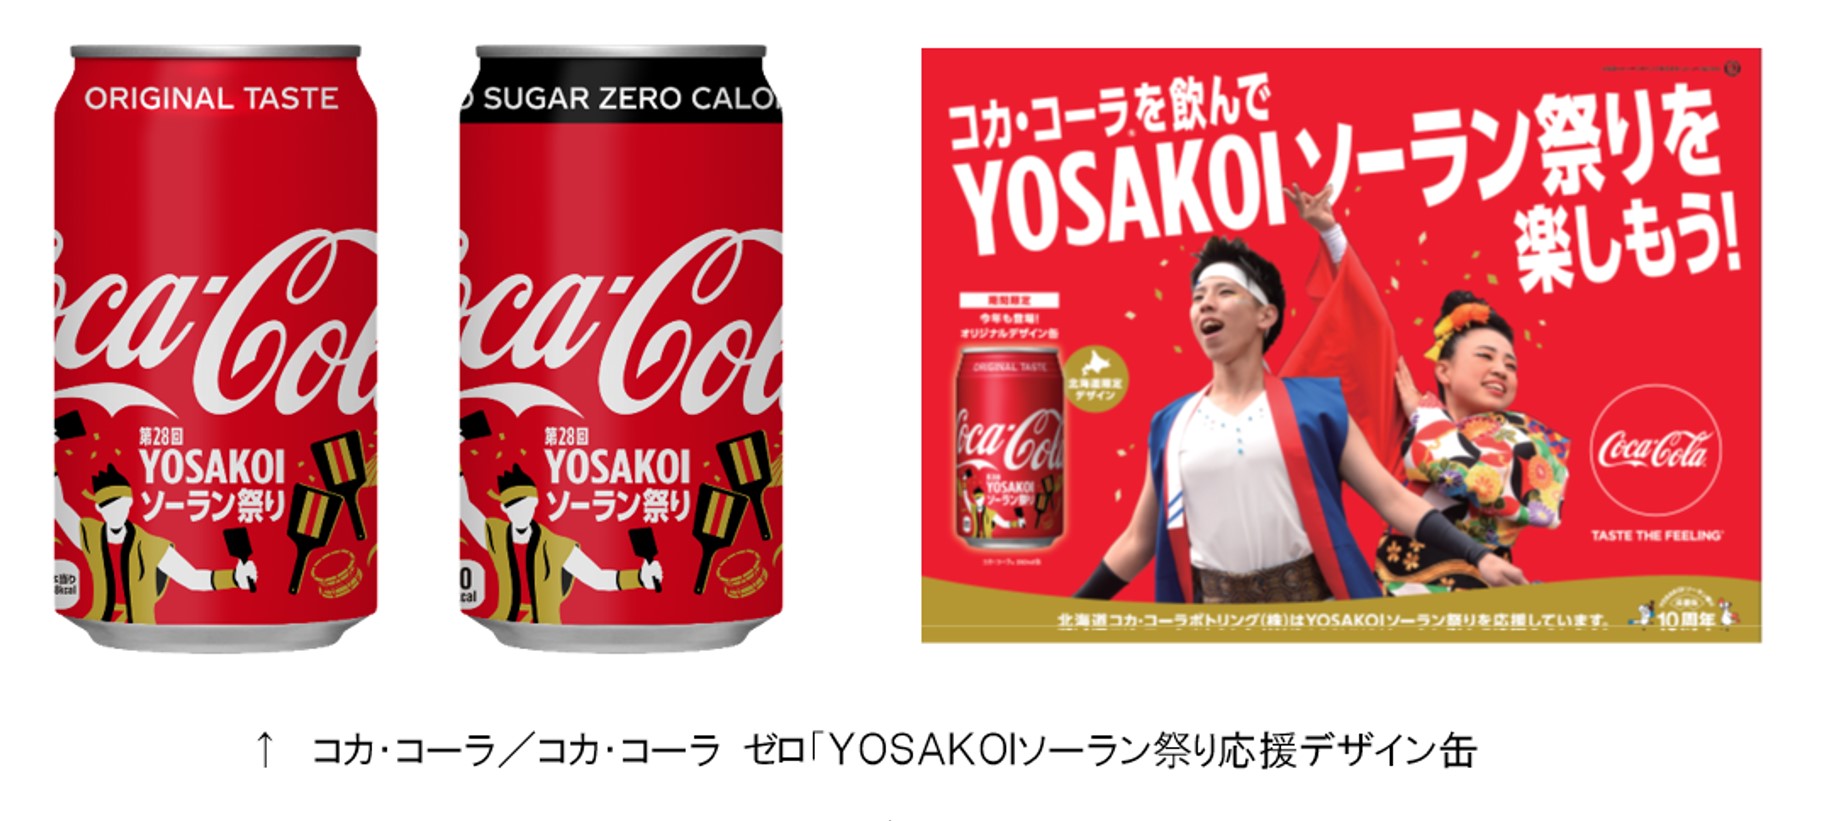 コカ コーラ コカ コーラ ゼロ ｙｏｓａｋｏｉソーラン祭り応援デザイン缶 が４月８日より北海道限定で発売されます 一般社団法人yosakoiソーラン祭り組織委員会のプレスリリース